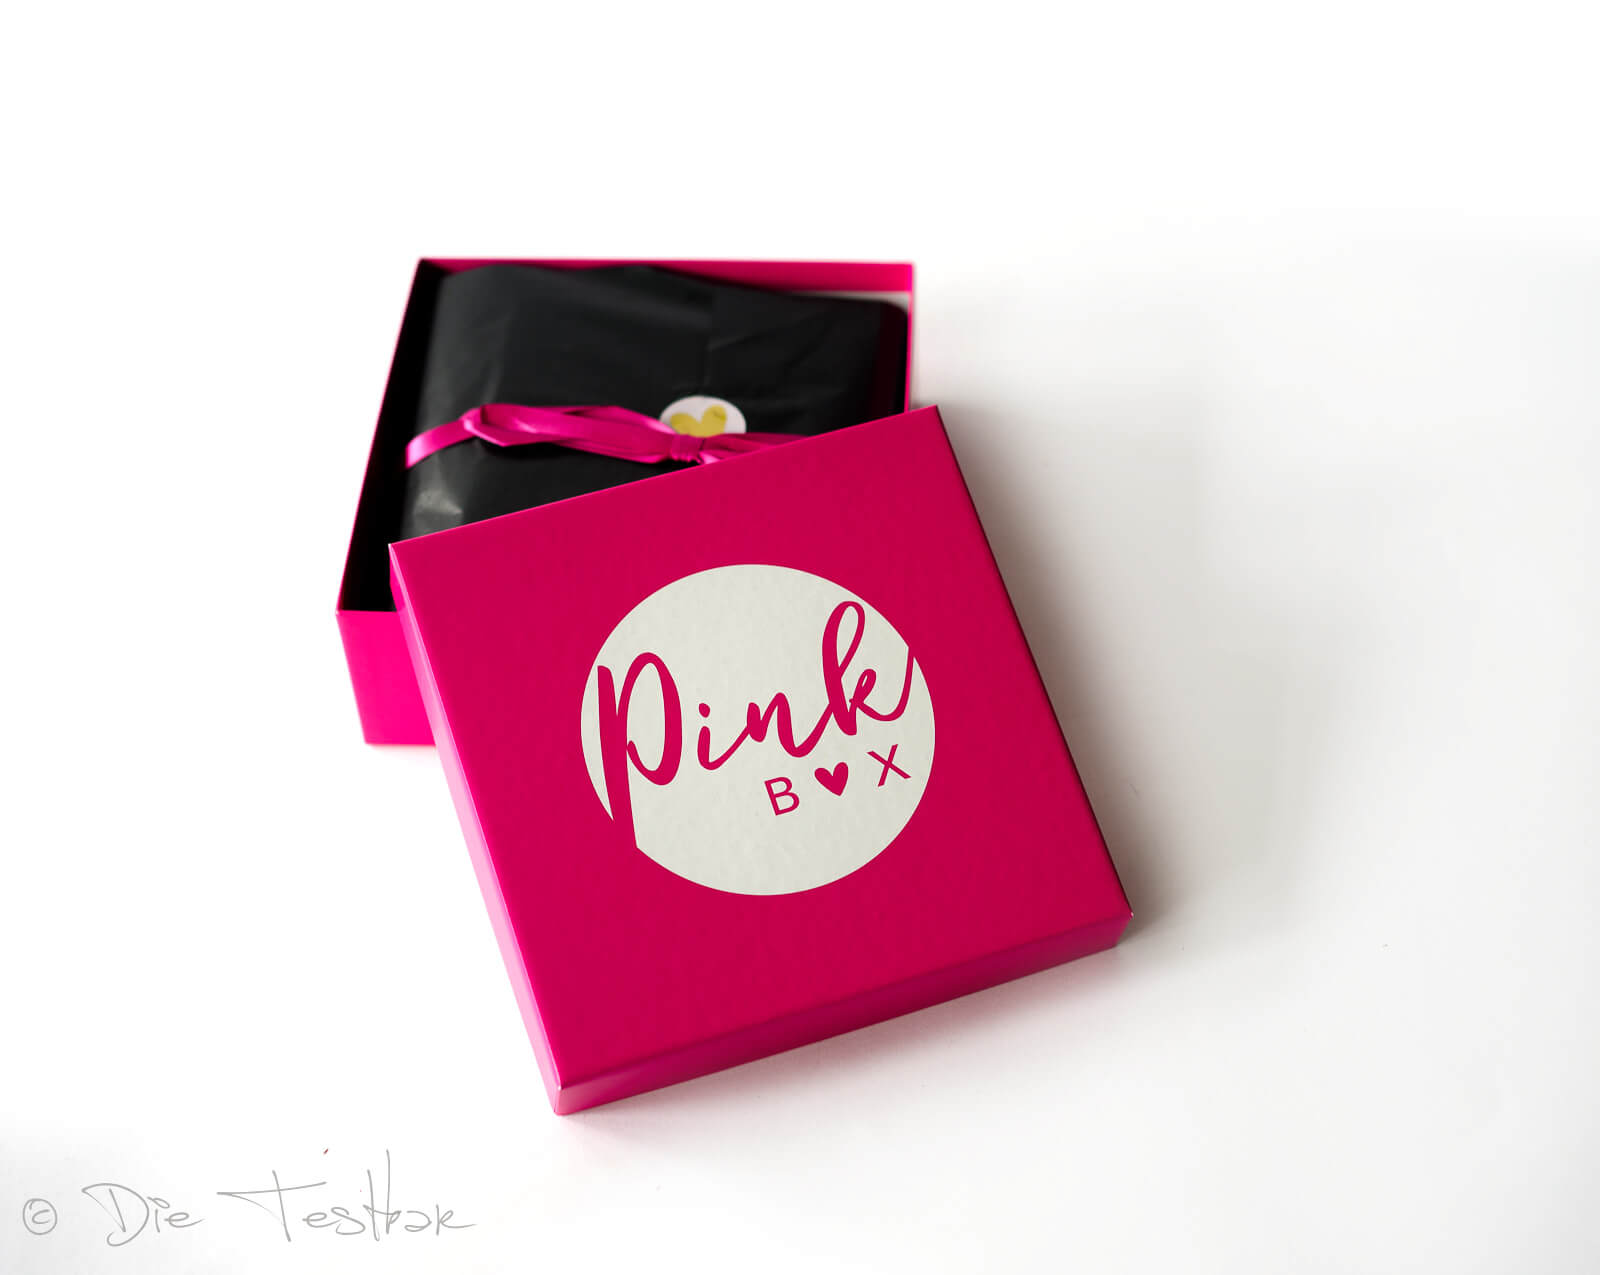 DIE PINK BOX im August 2020 – Pink Box Tutti Frutti 2020